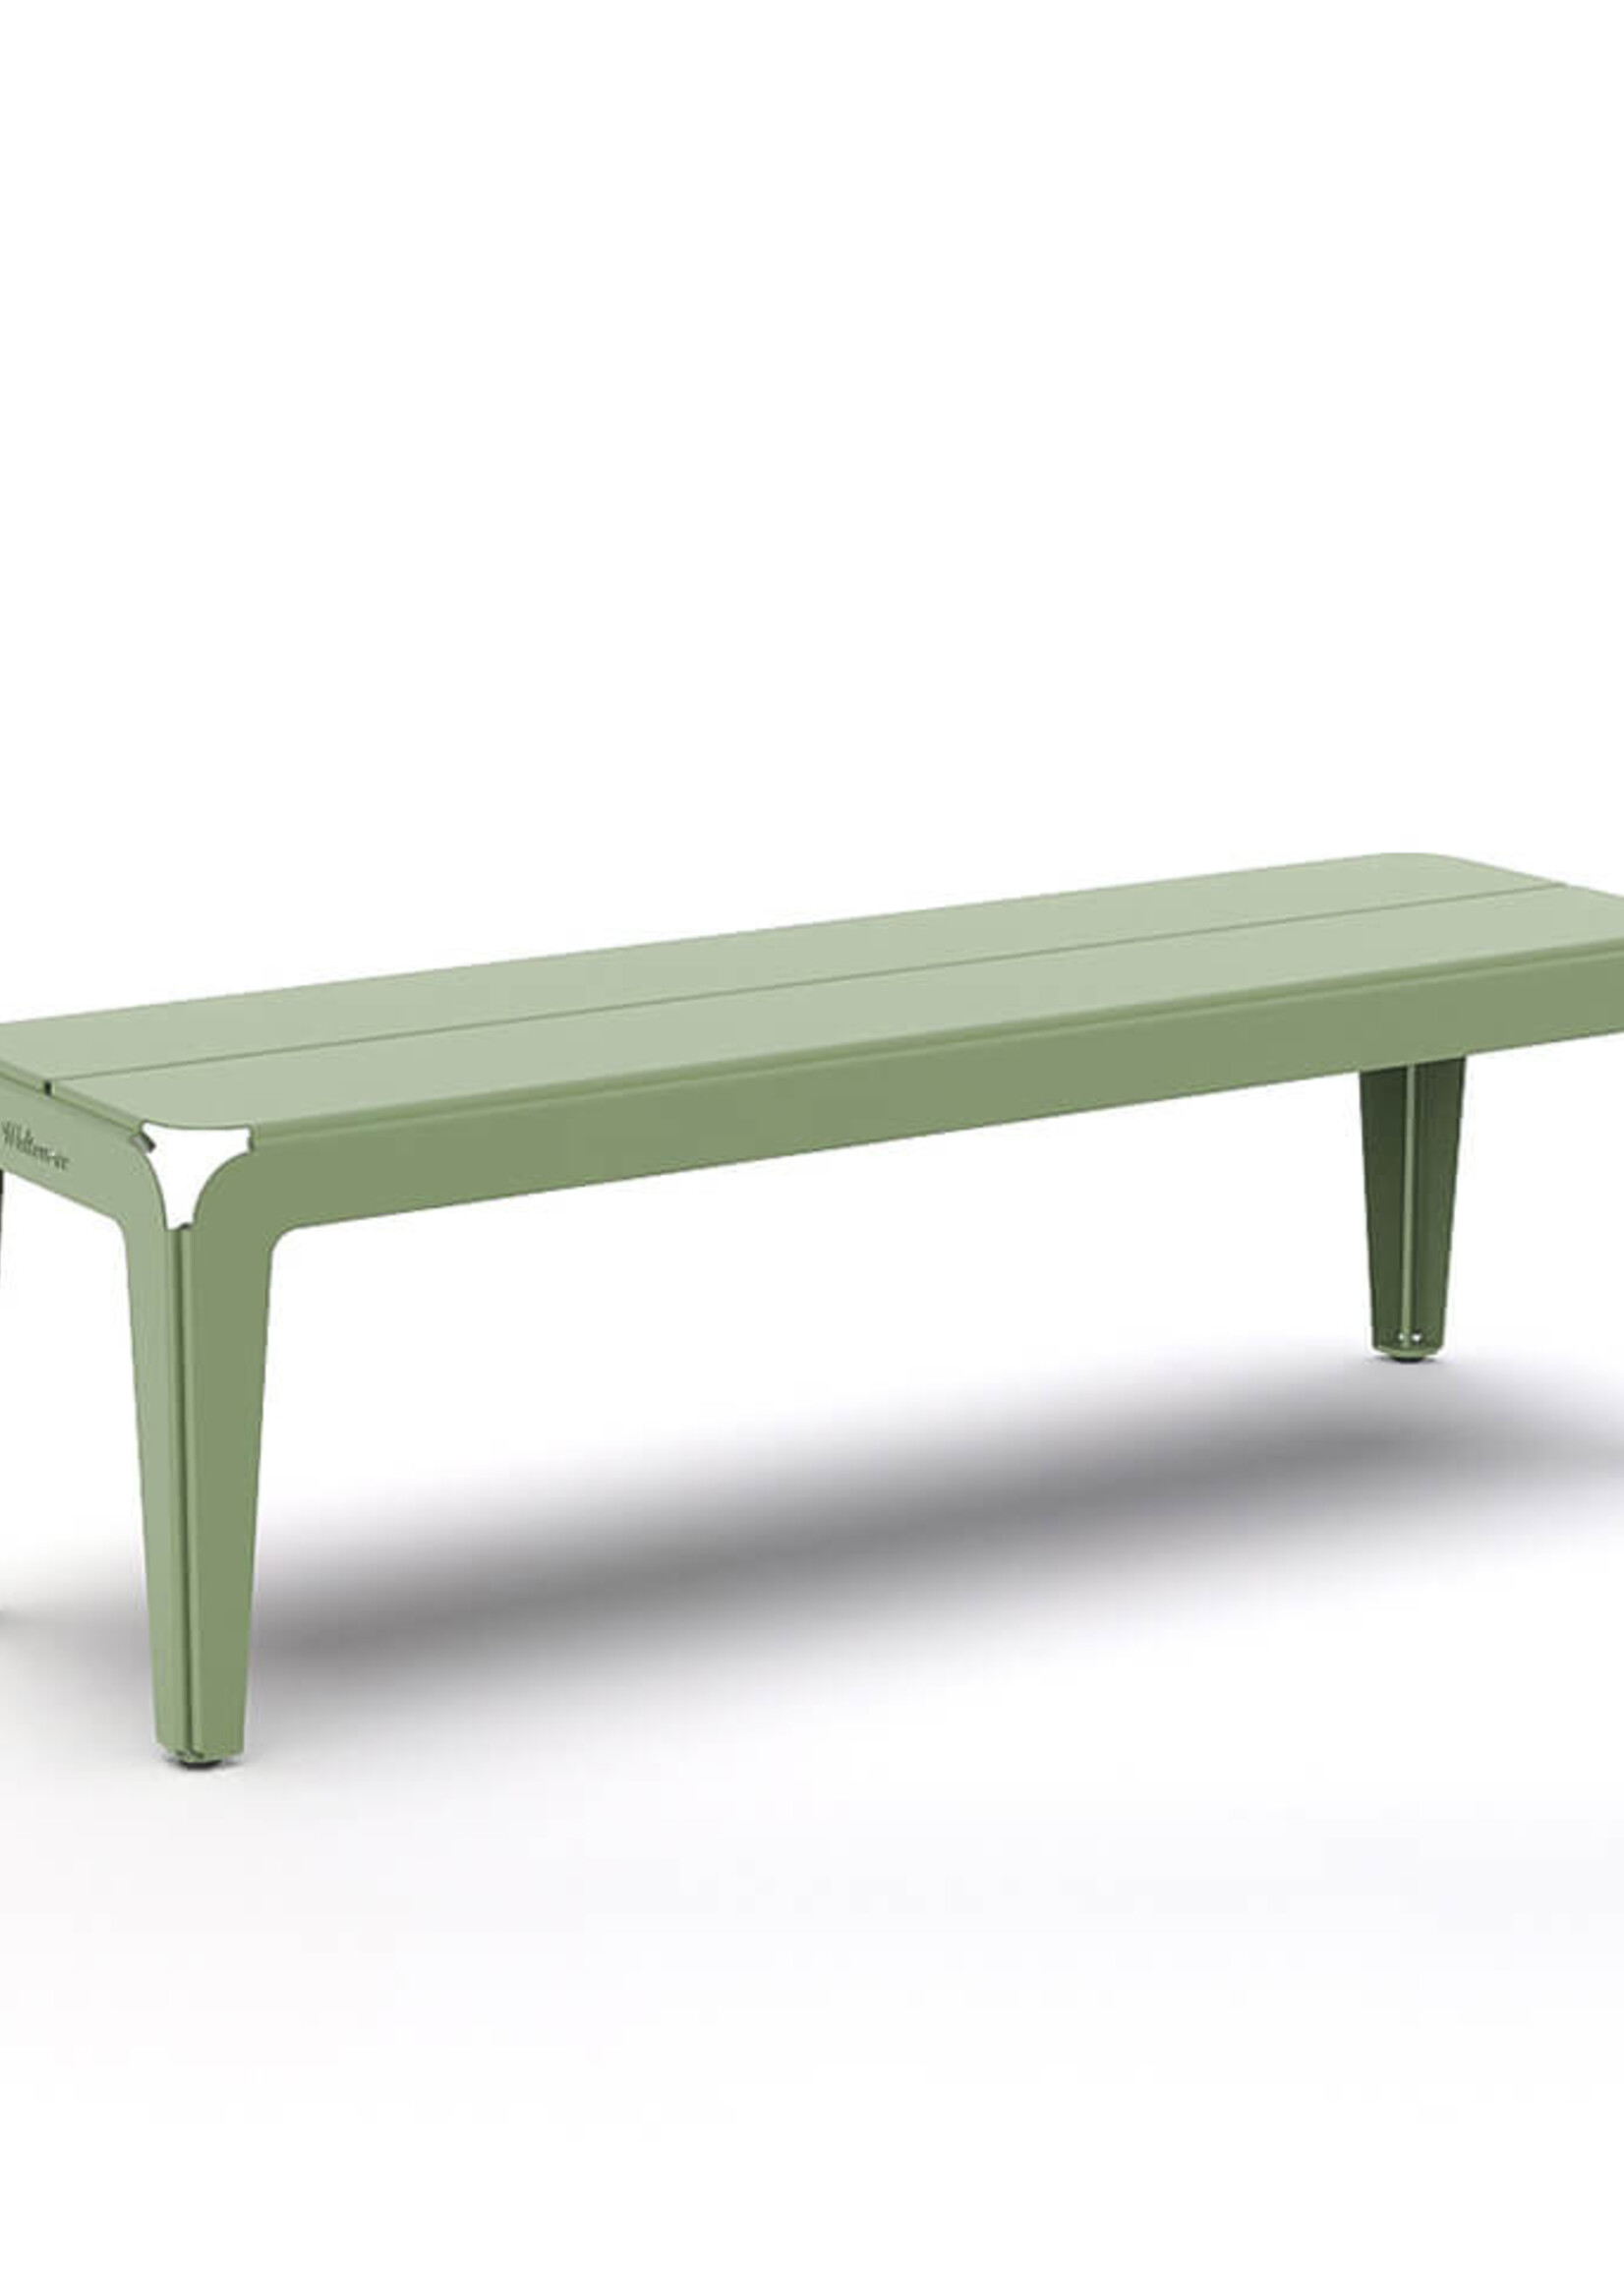 Weltevree Weltevree - Bended Bench 140 - Banc de jardin léger en aluminium - Vert pâle